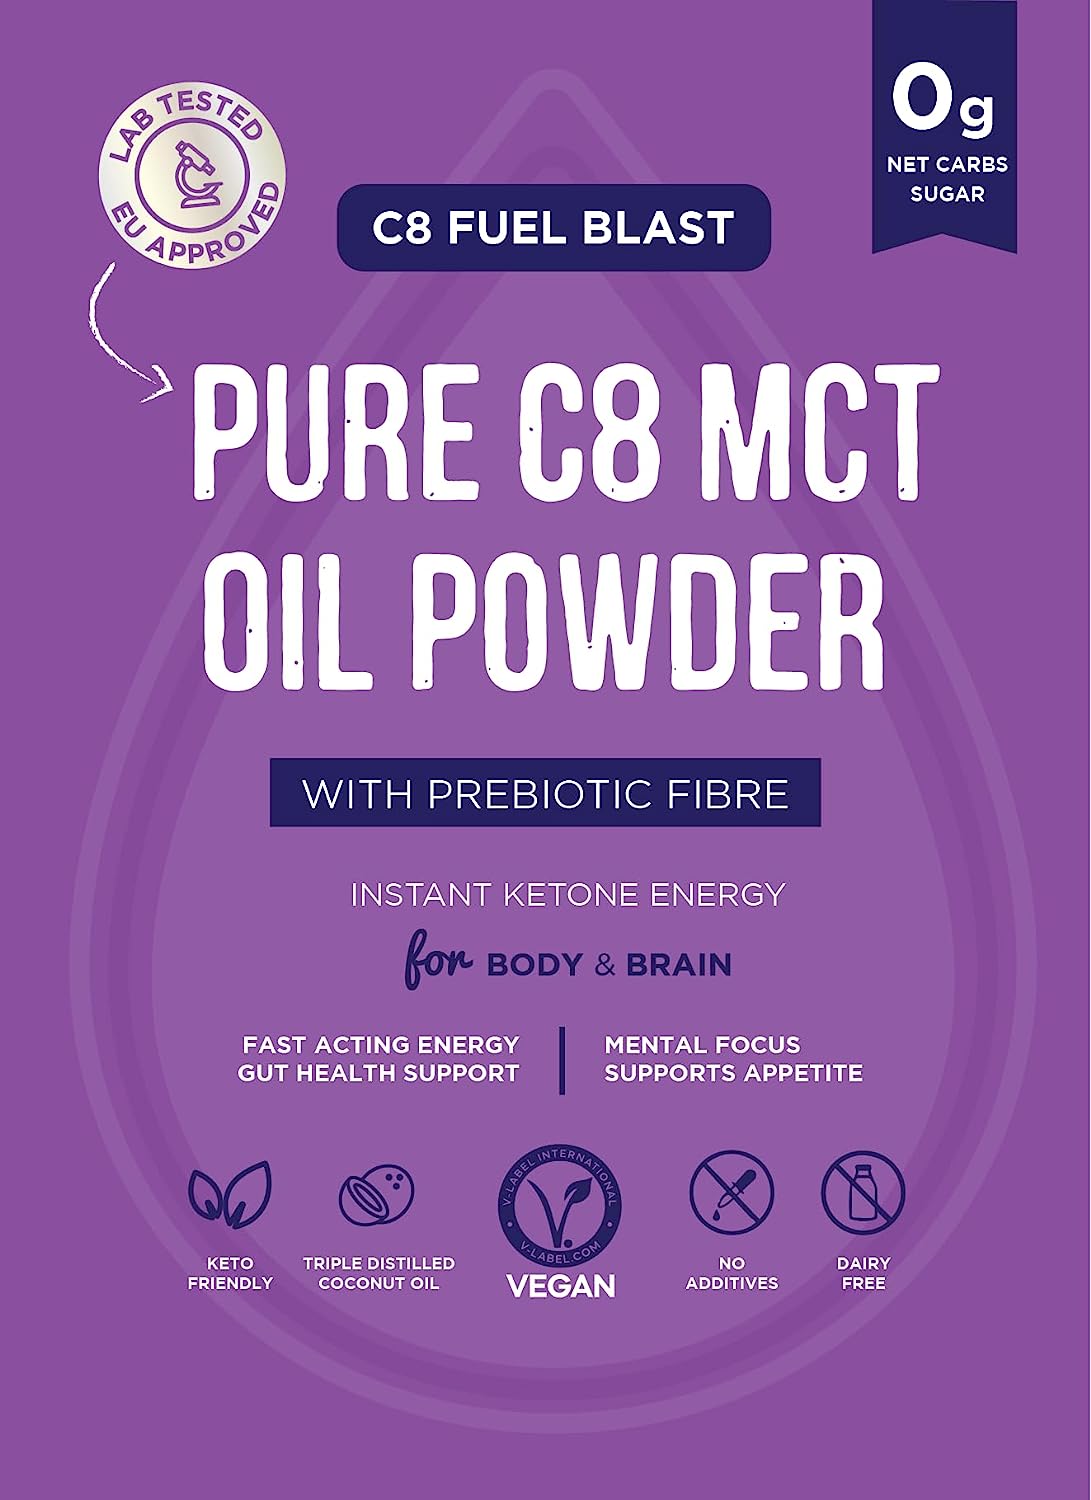 Clean & Pure Premium C8 MCT Oil Powder